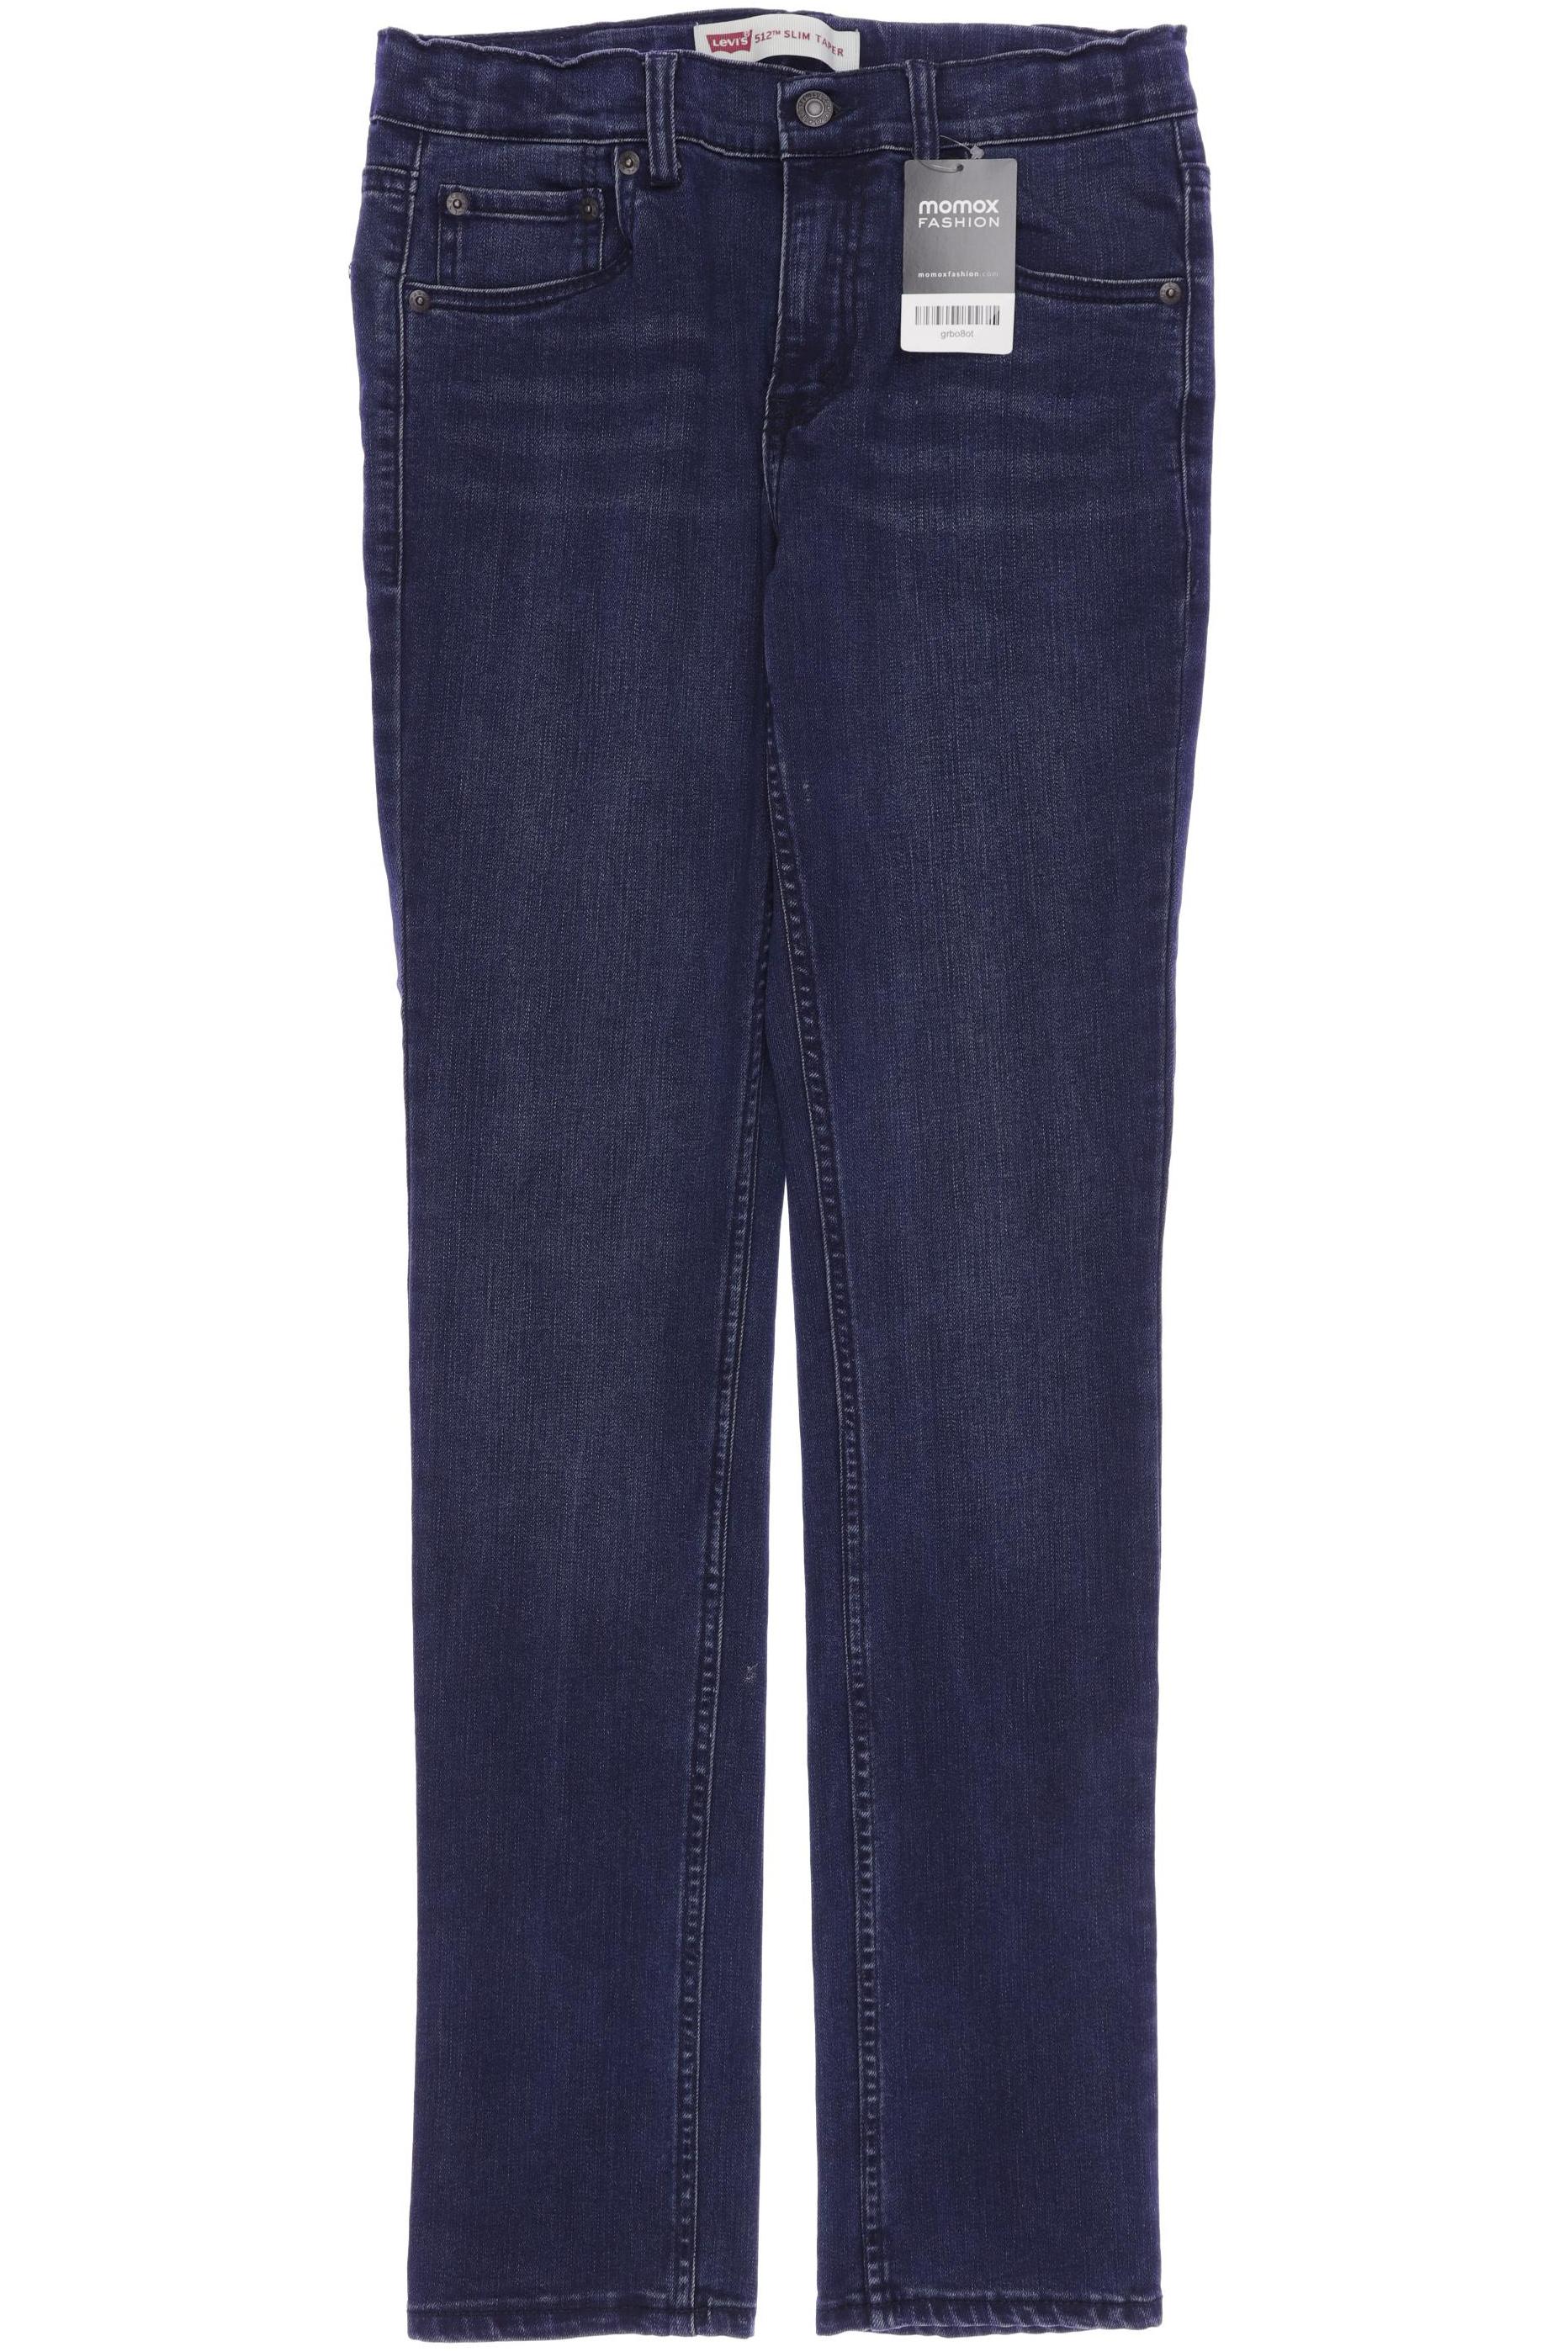 Levis Damen Jeans, marineblau, Gr. 176 von Levis